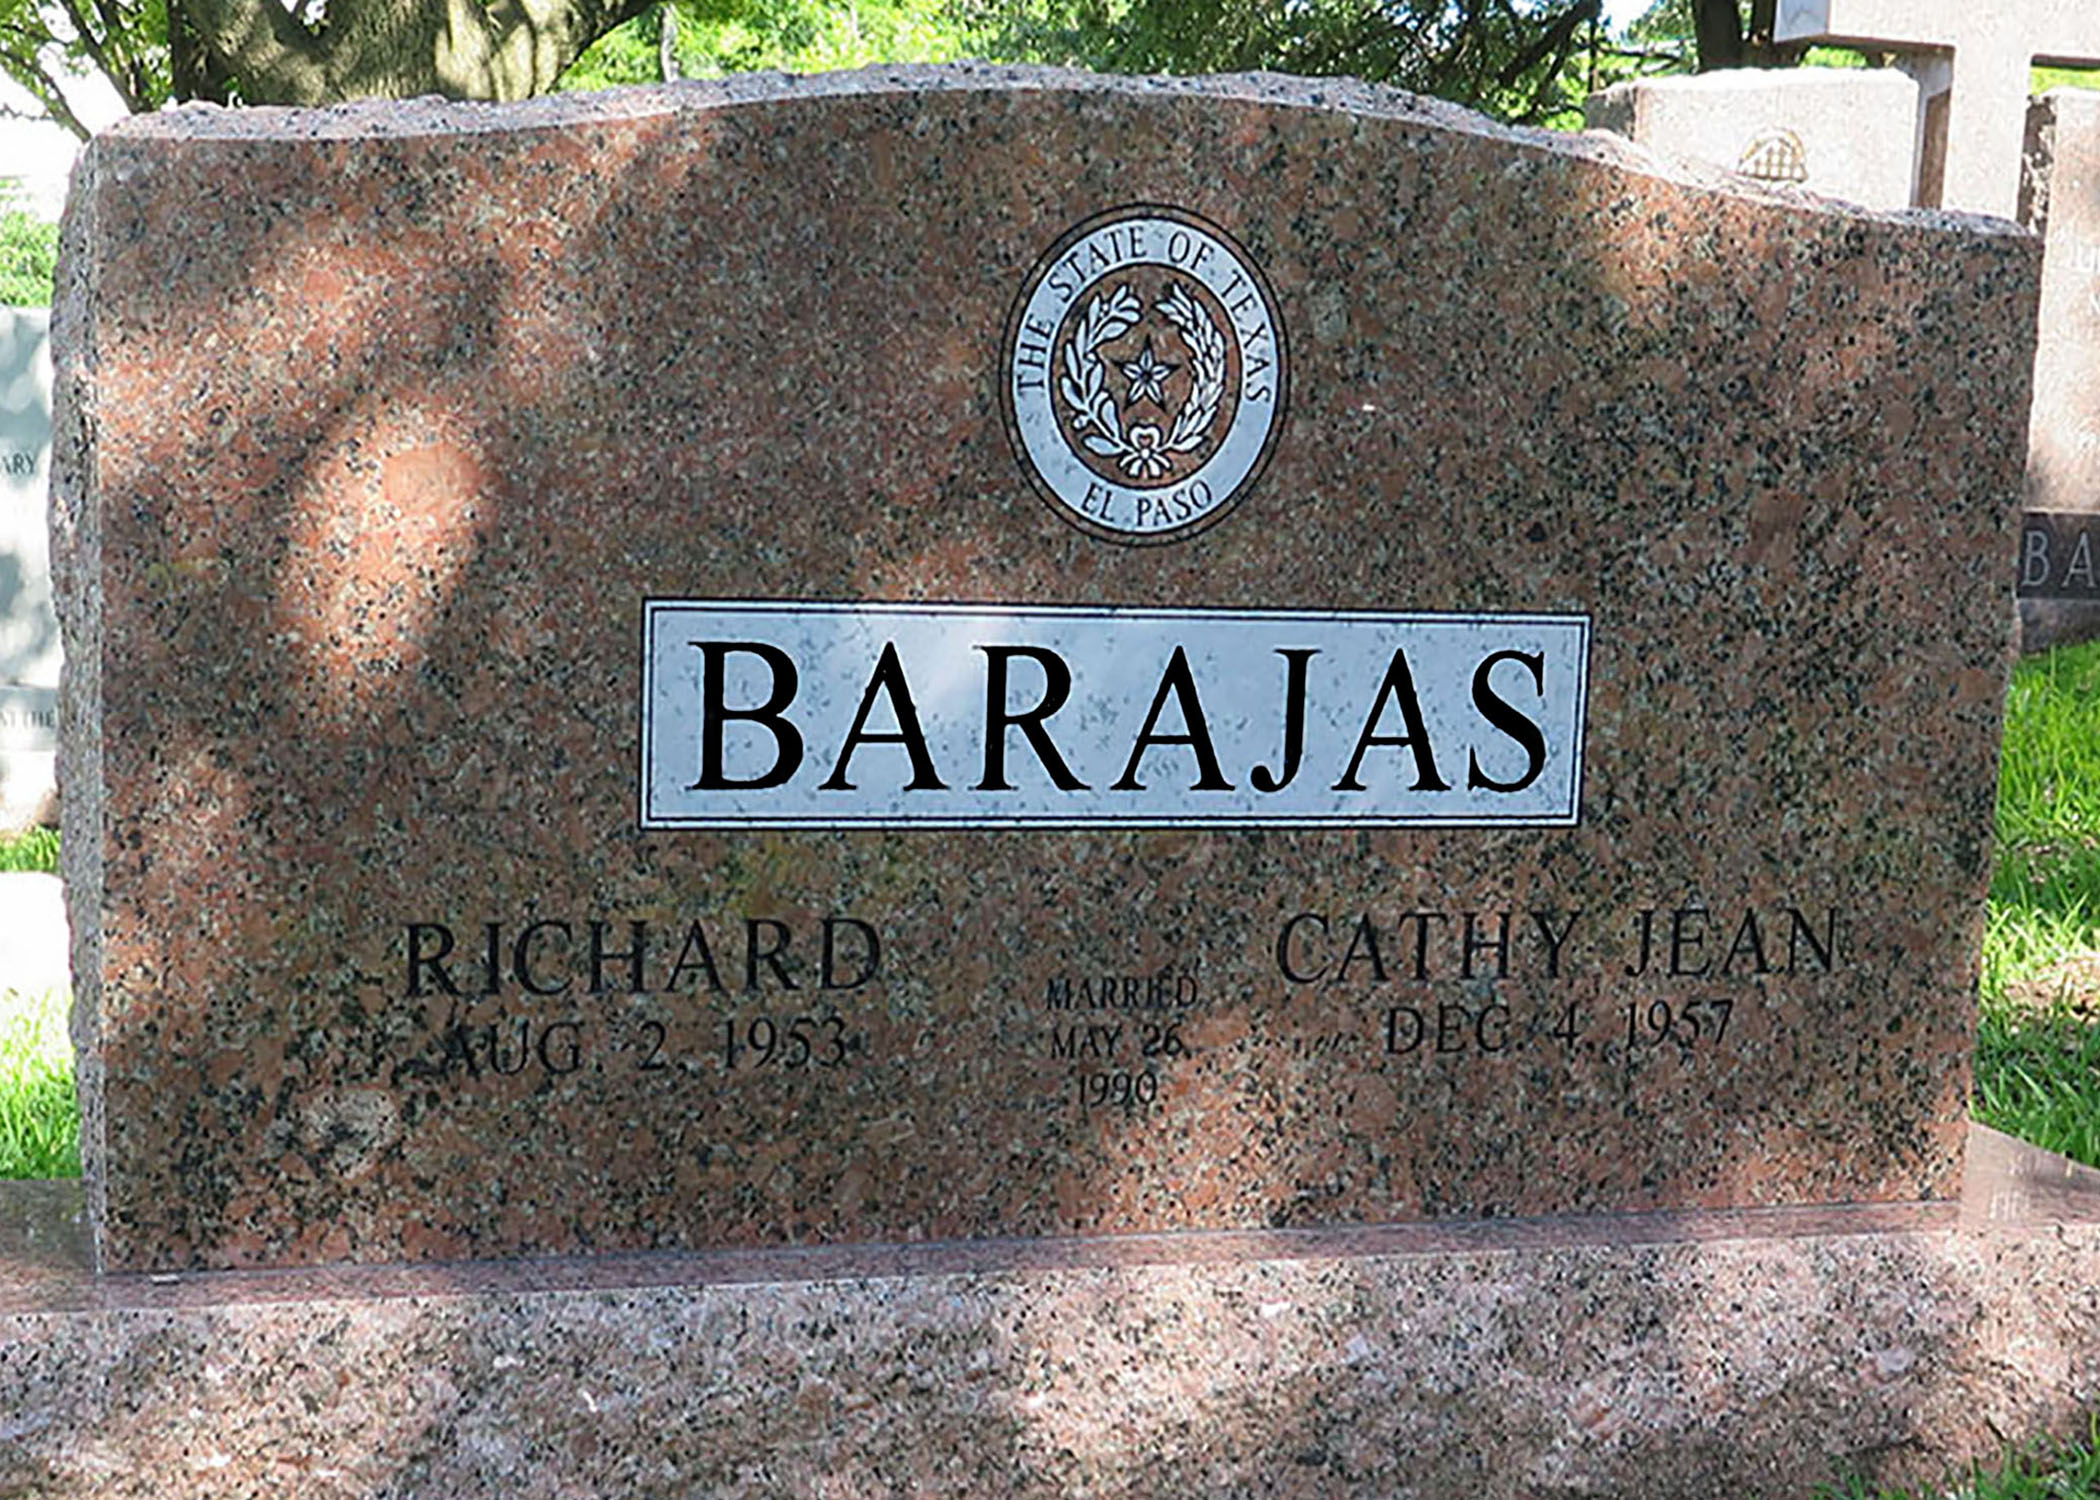 Barajas_front_lg_installed, FINAL